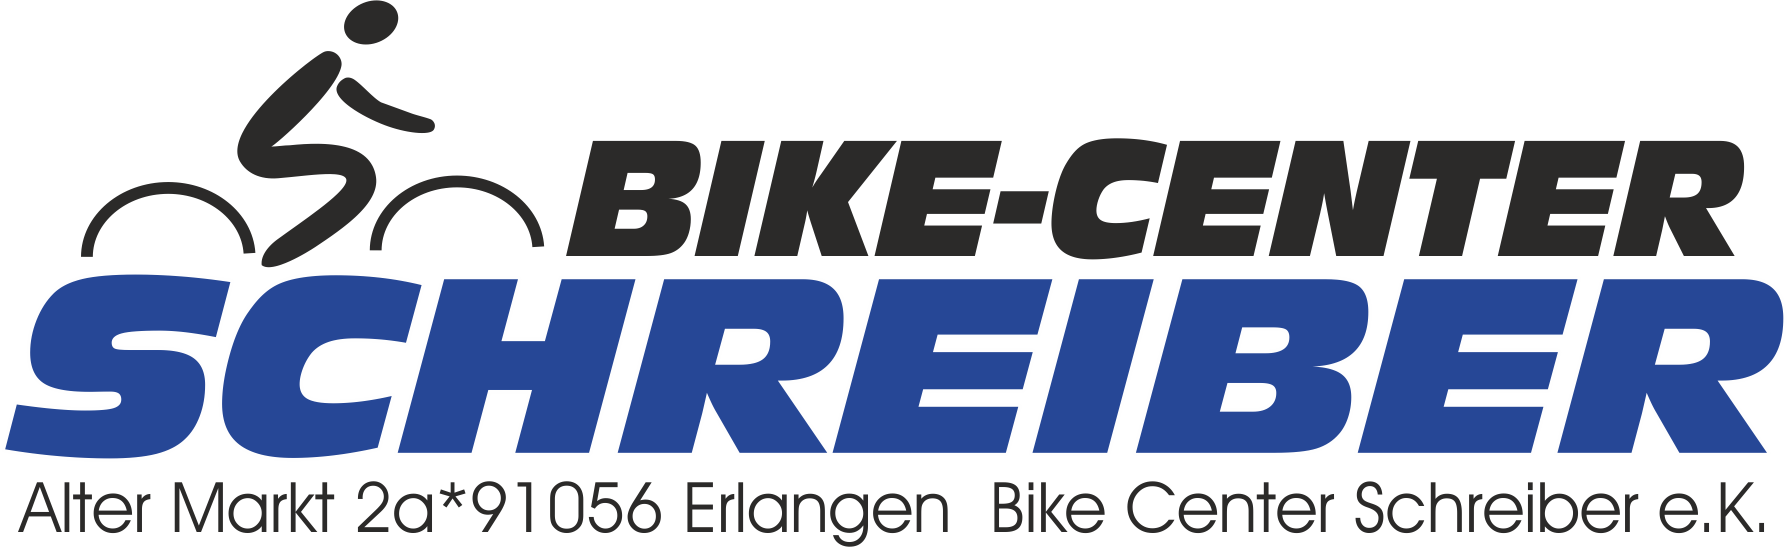 Bike Center Schreiber e.K. – Erlangen UP!